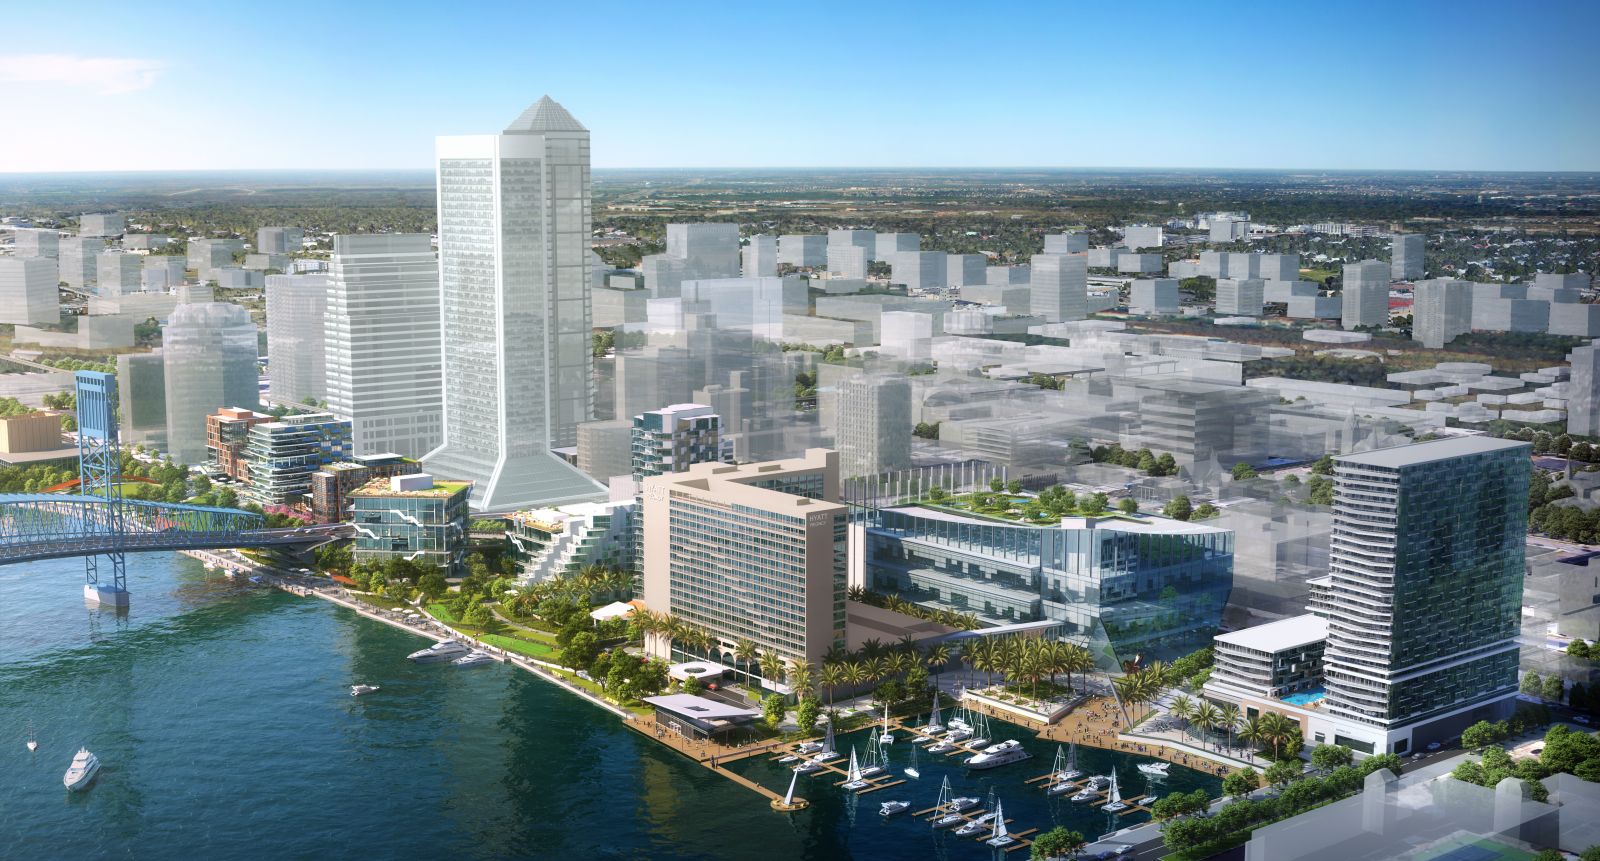 7867Southeast Development Group Announces 1.1 Billion Master Plan For Jacksonville’s Riverfront